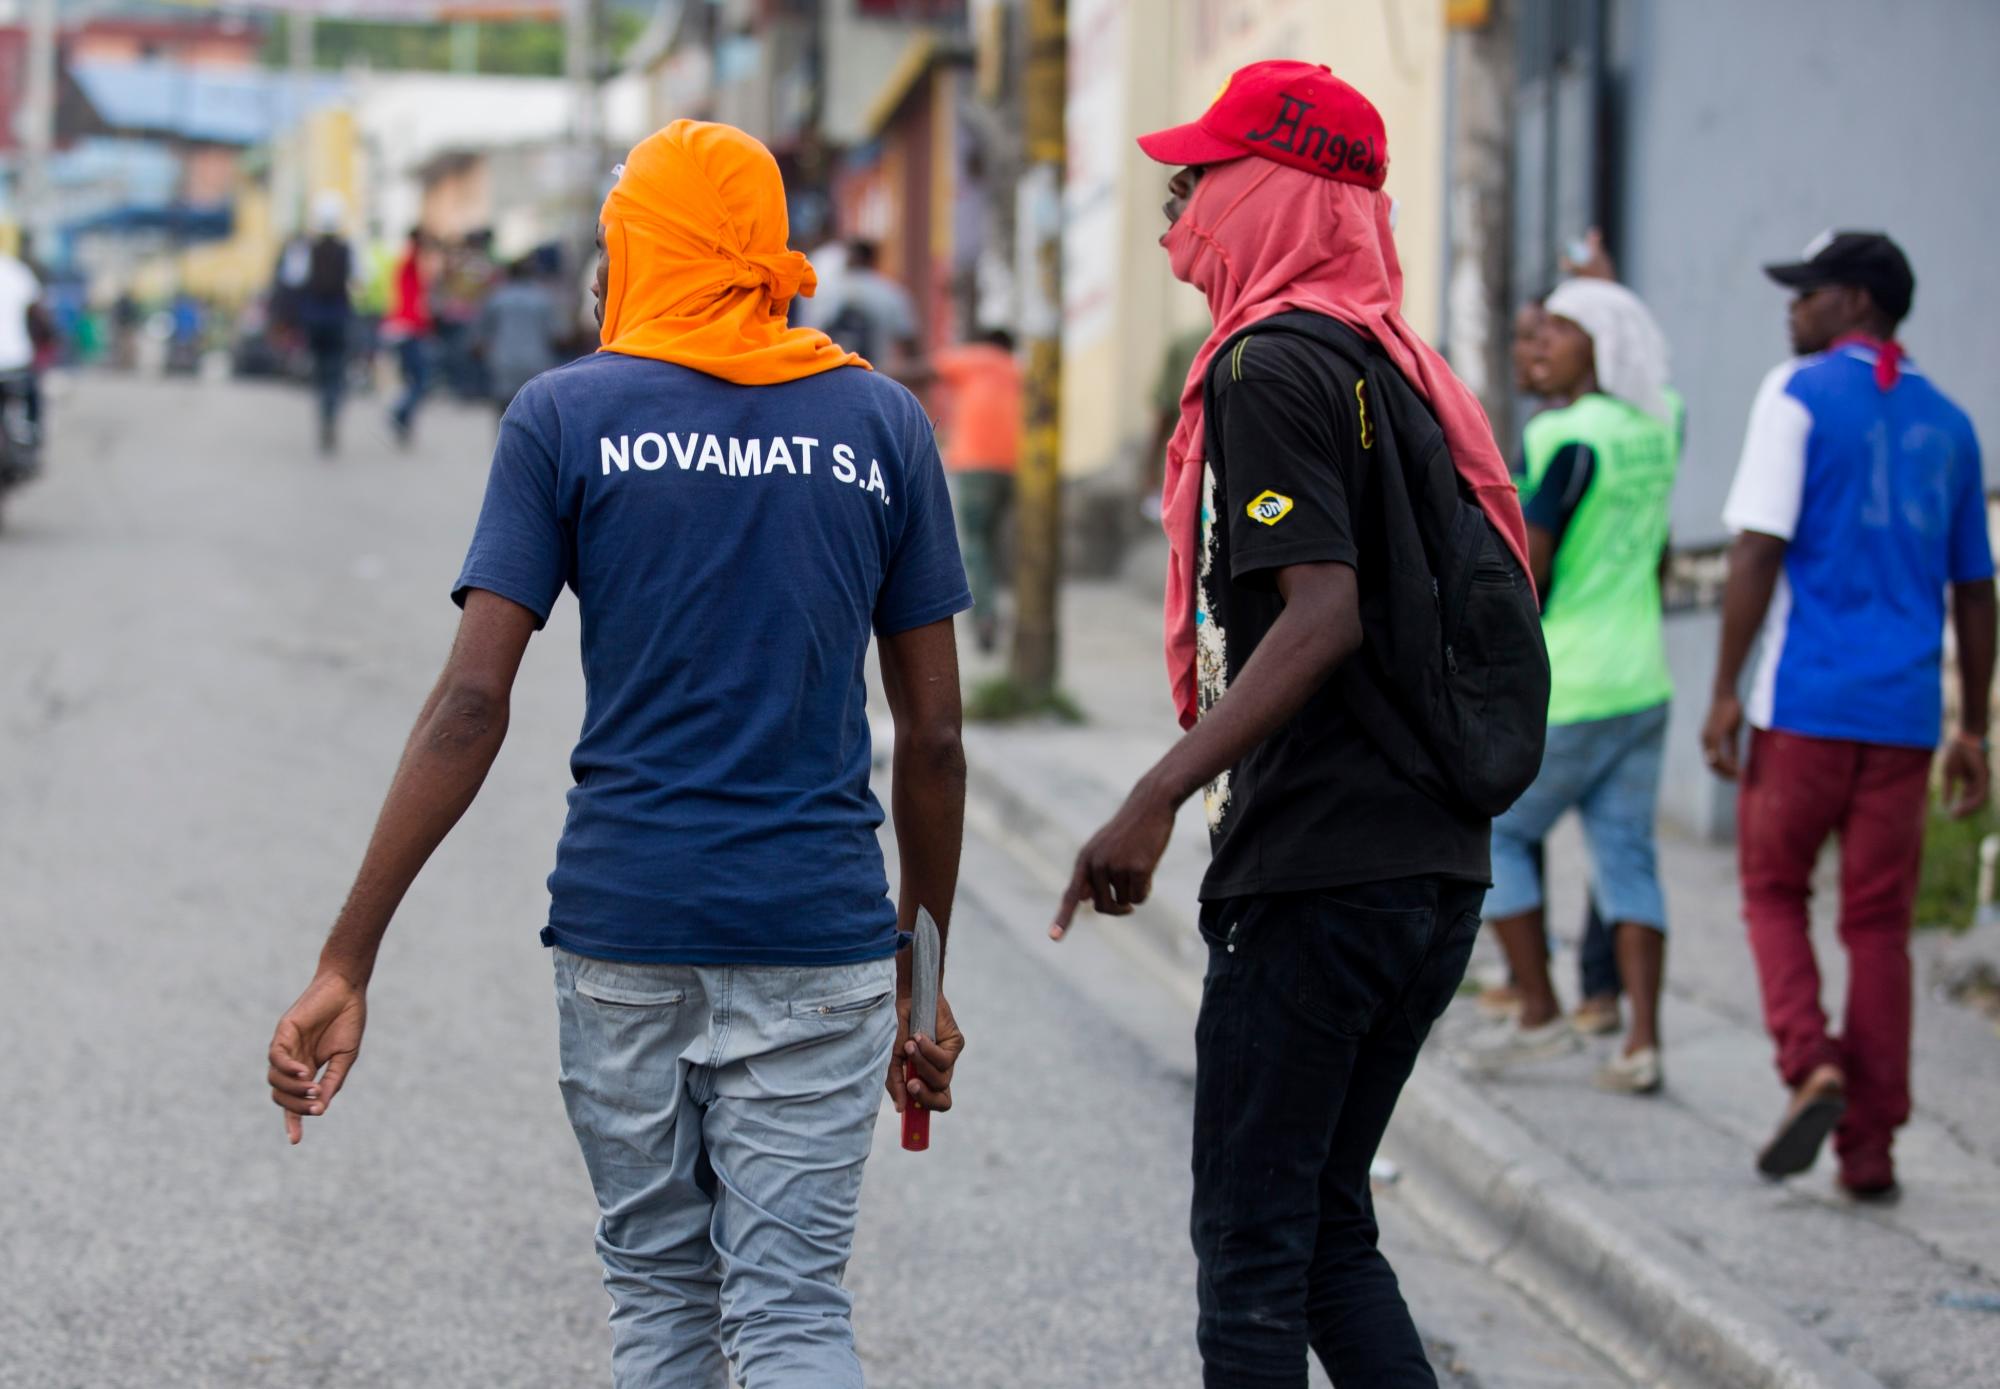 Un manifestante camina con un cuchillo en la mano durante una protesta para exigir la renuncia del presidente de Haití, Jovenel Moise, en el 216 aniversario de la Batalla de Vertieres en Puerto Príncipe, Haití, el lunes 18 de noviembre de 2019. Al menos cuatro personas. fueron baleados y heridos durante una pequeña protesta en la capital de Haití luego de un discurso del presidente Moise. Un periodista local, un oficial de policía y dos manifestantes fueron trasladados rápidamente con heridas de bala aparentes. 